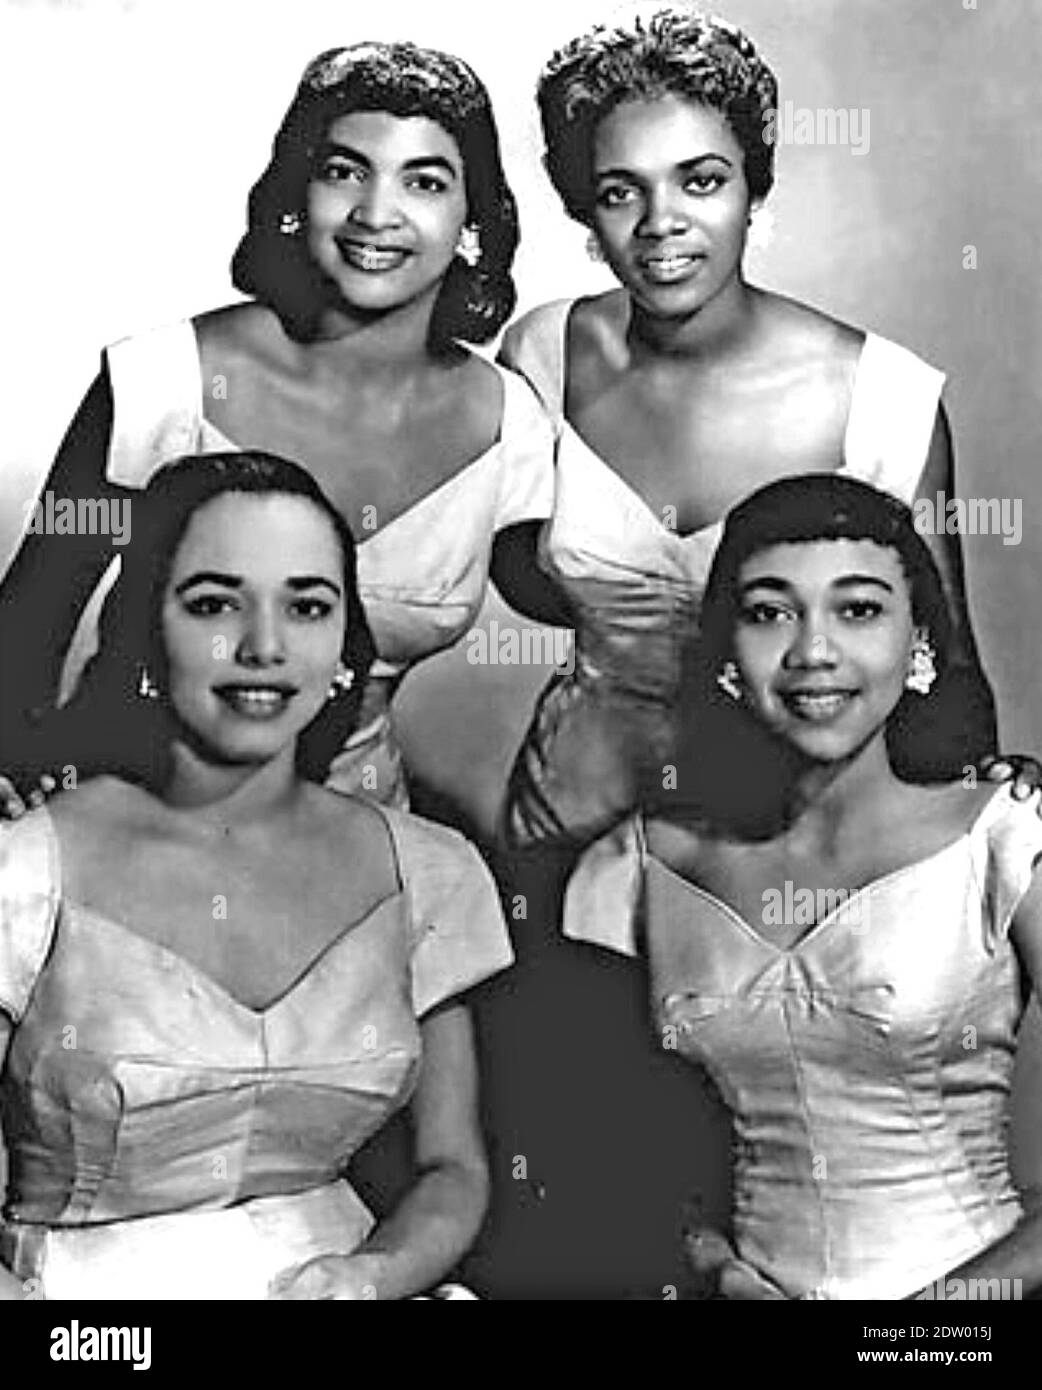 THE BLOSSOMS Foto promozionale del gruppo vocale americano circa 1957. Da sinistra: Nanette Williams, Fanita James, Gloria Jones, Annette Williams Foto Stock